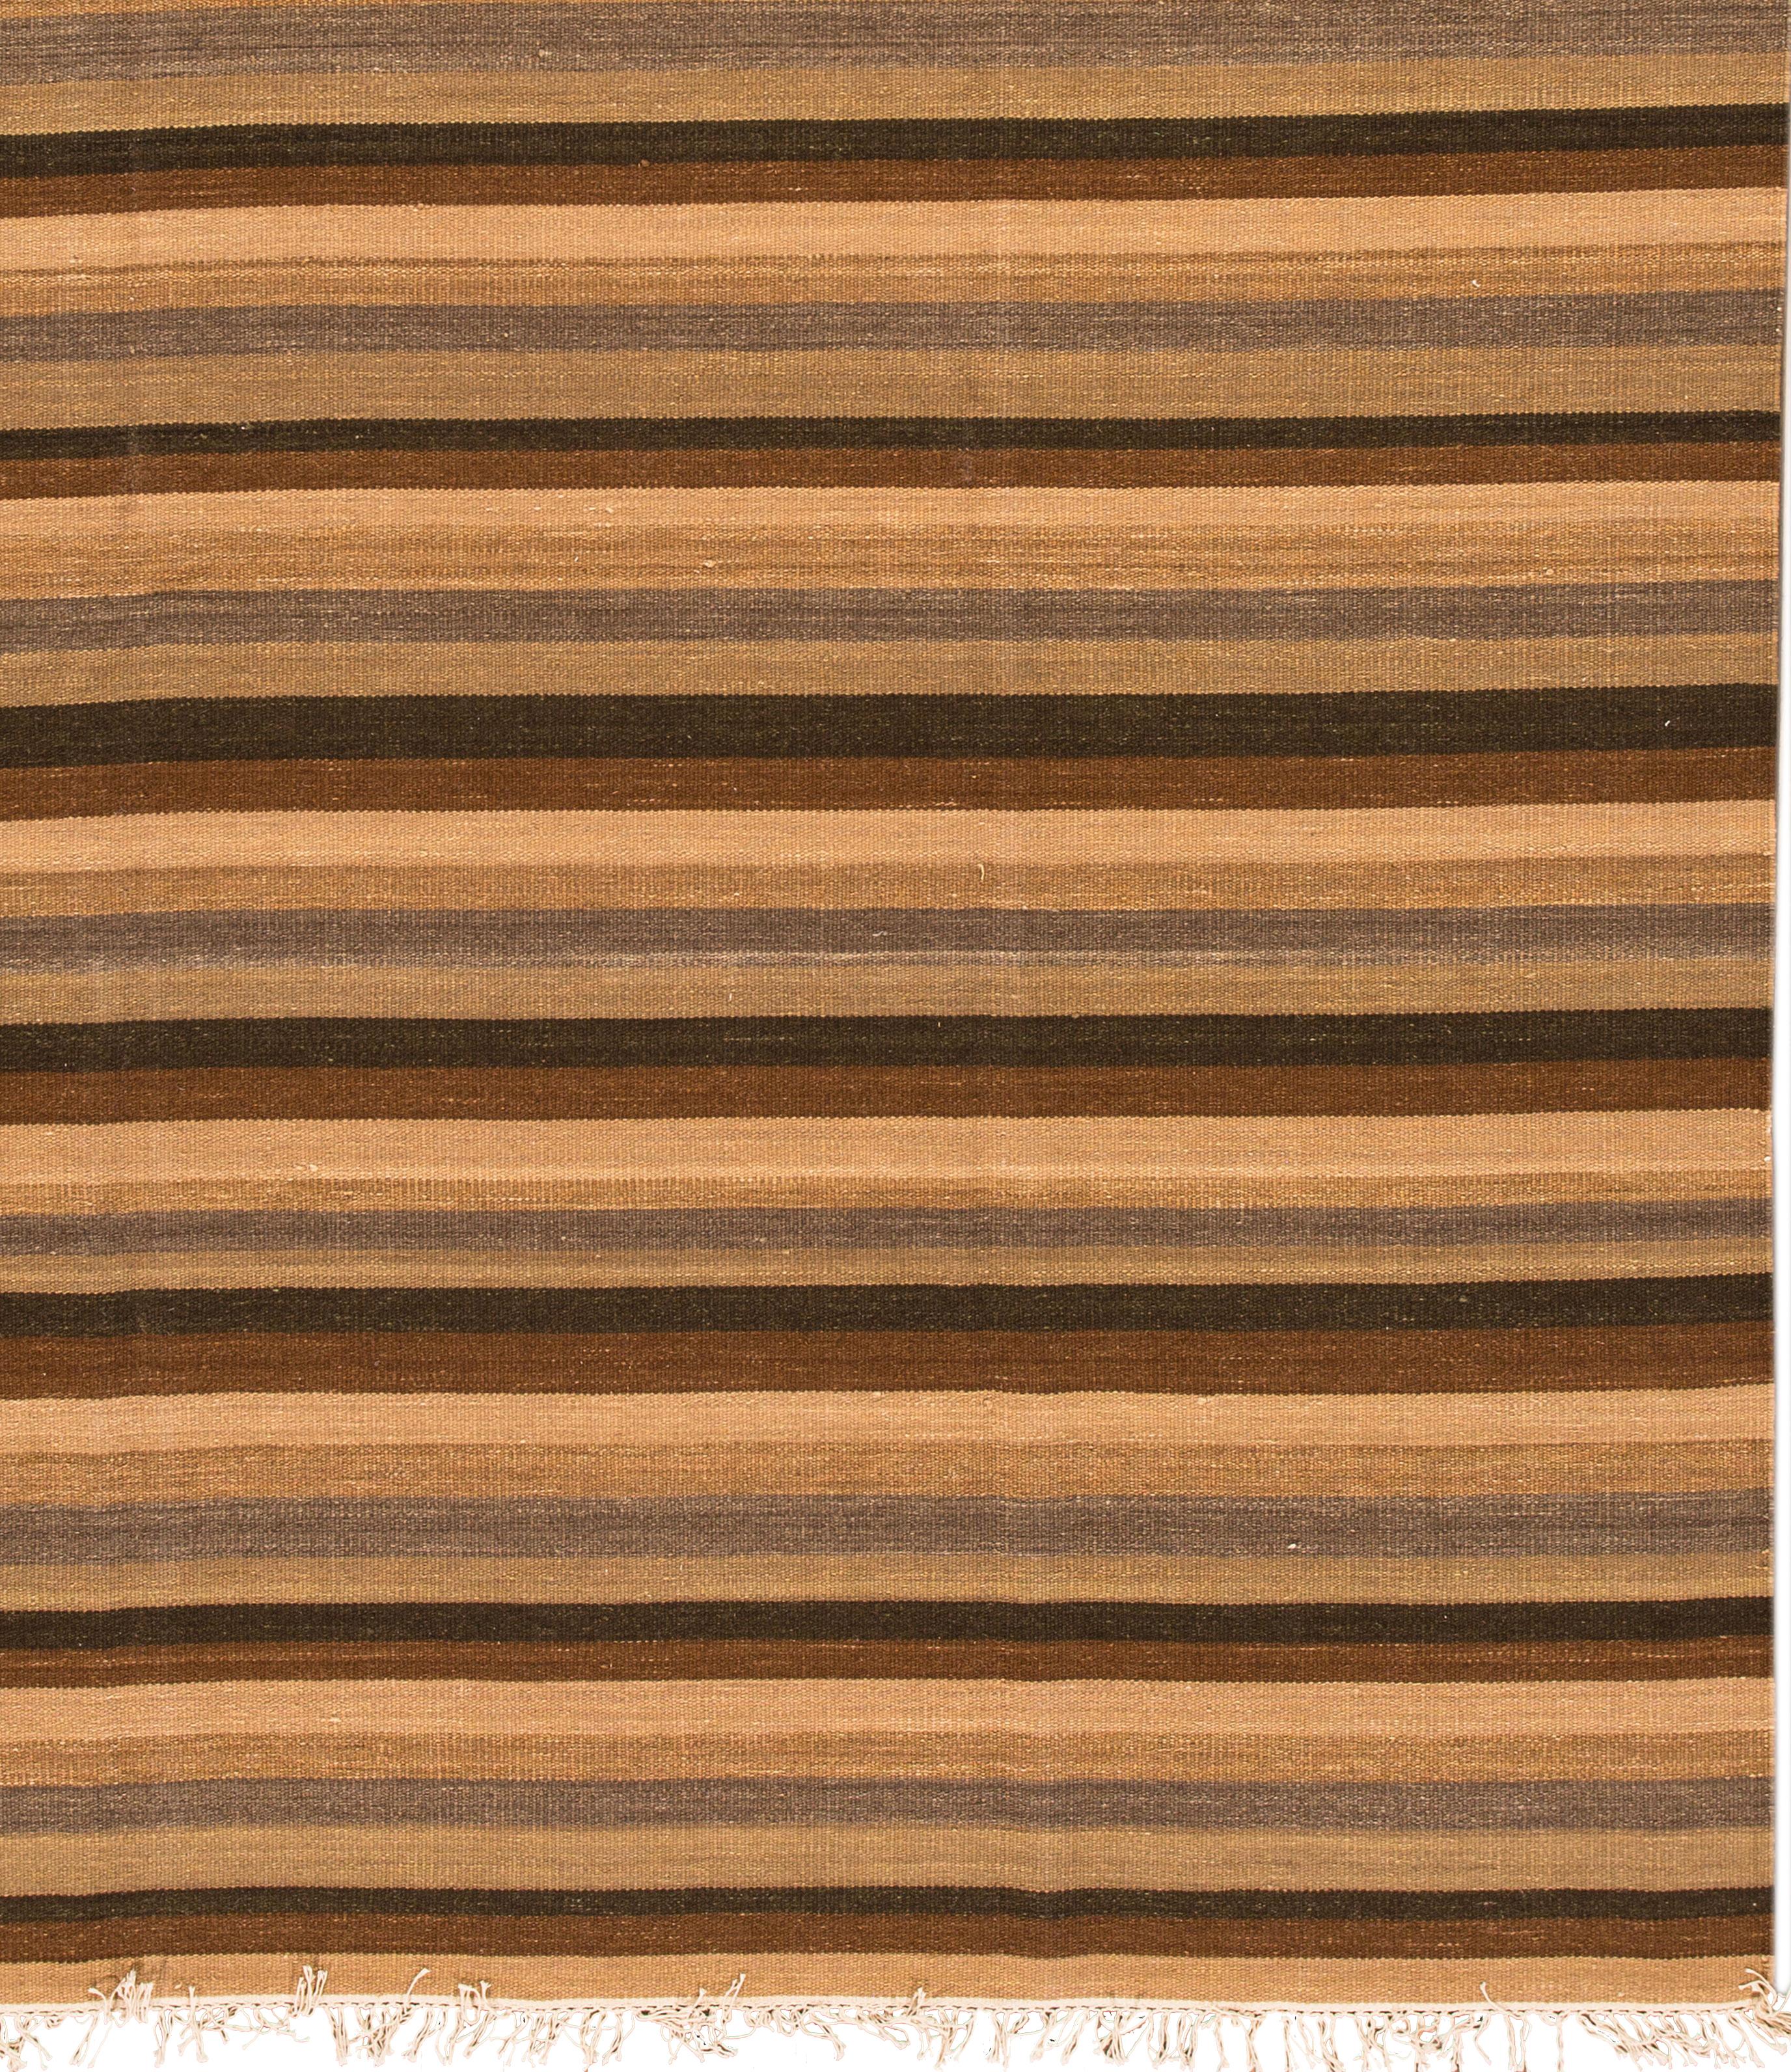 Alfombra Kilim turca del siglo XXI, de lana anudada a mano con un campo rayado de color marrón oscuro, marrón claro y tostado.
Esta alfombra mide 7' 10